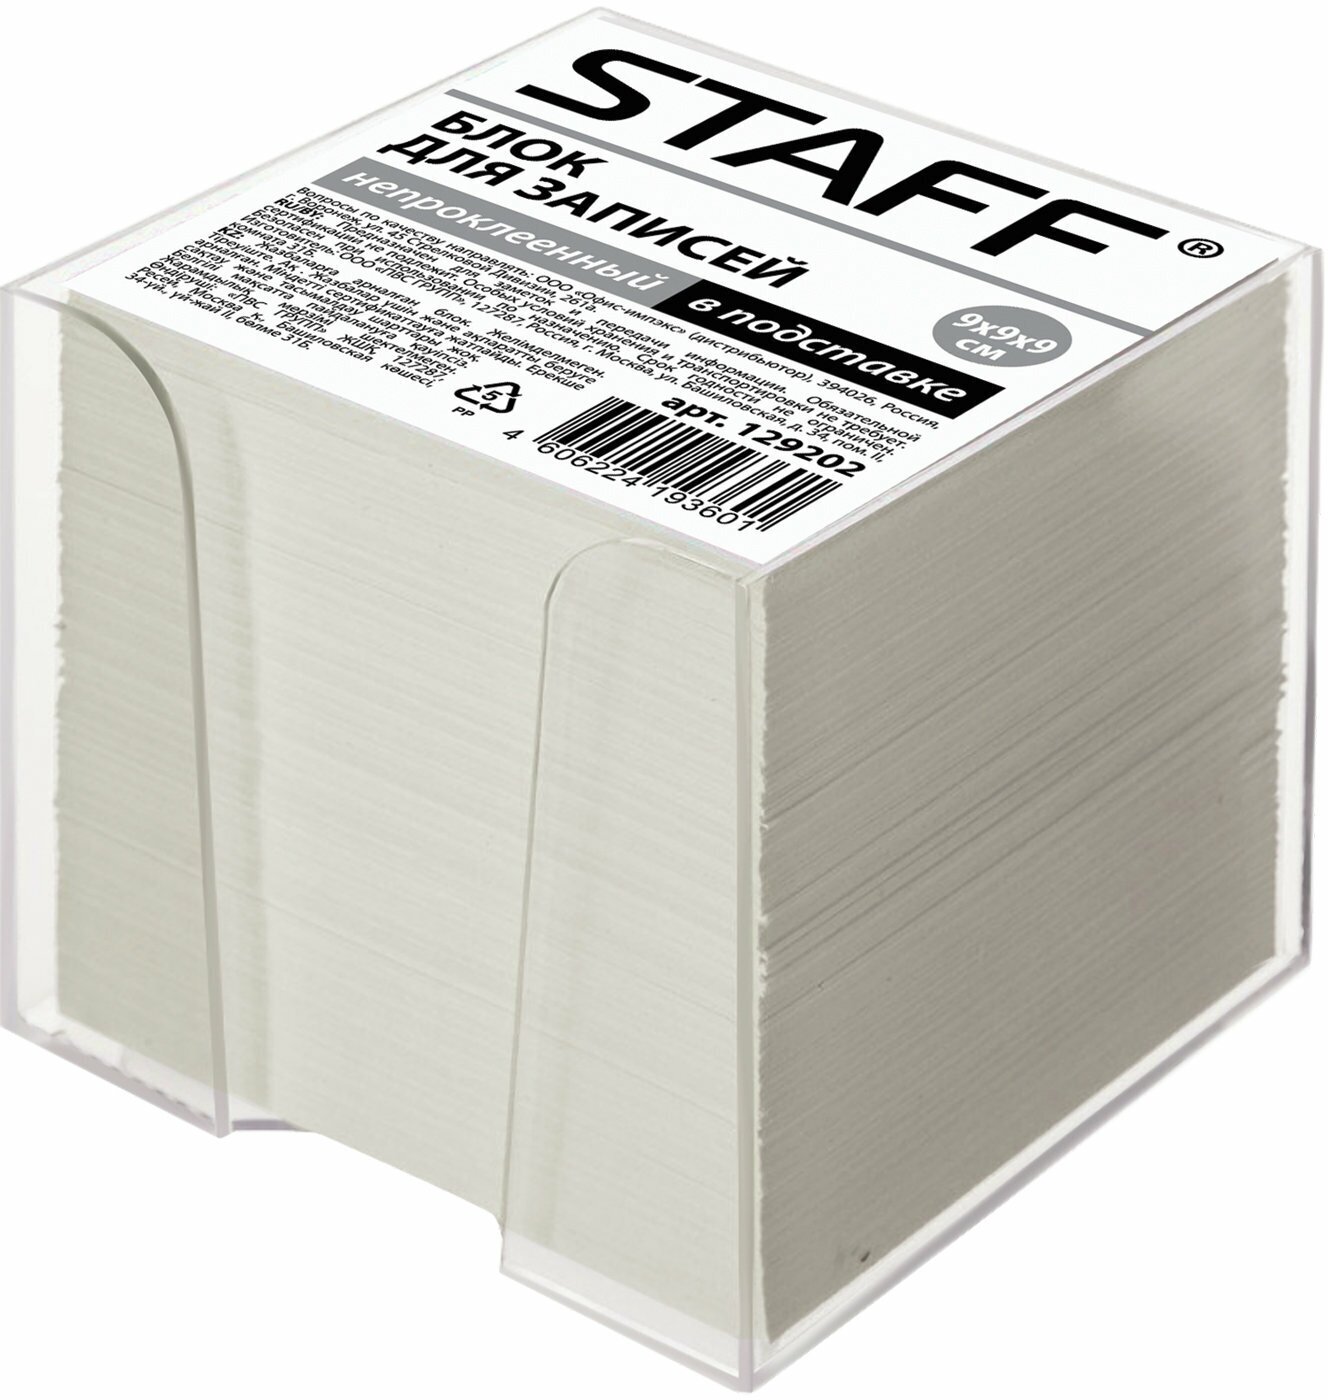 Блок для записей Staff в подставке прозрачной, куб 9х9х9 см, белый, белизна 70-80% (129202)